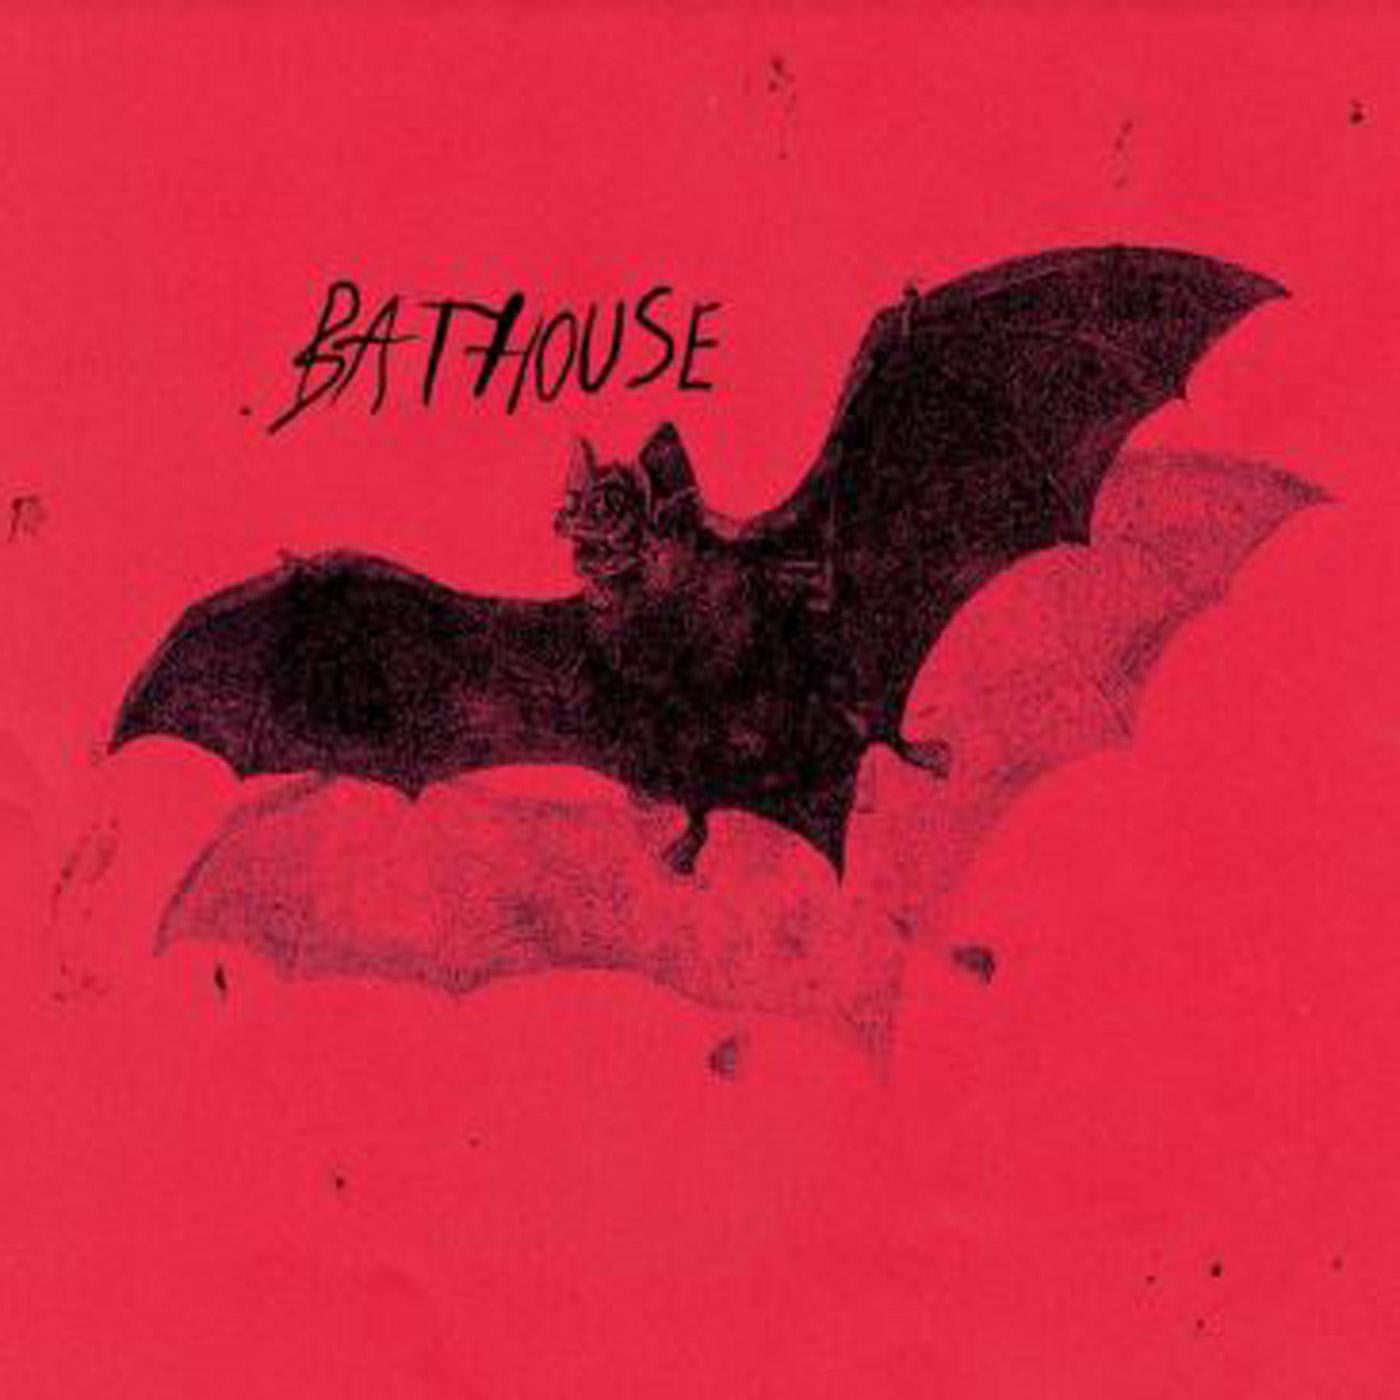 Bathouse - Bathouse [Red Vinyl]